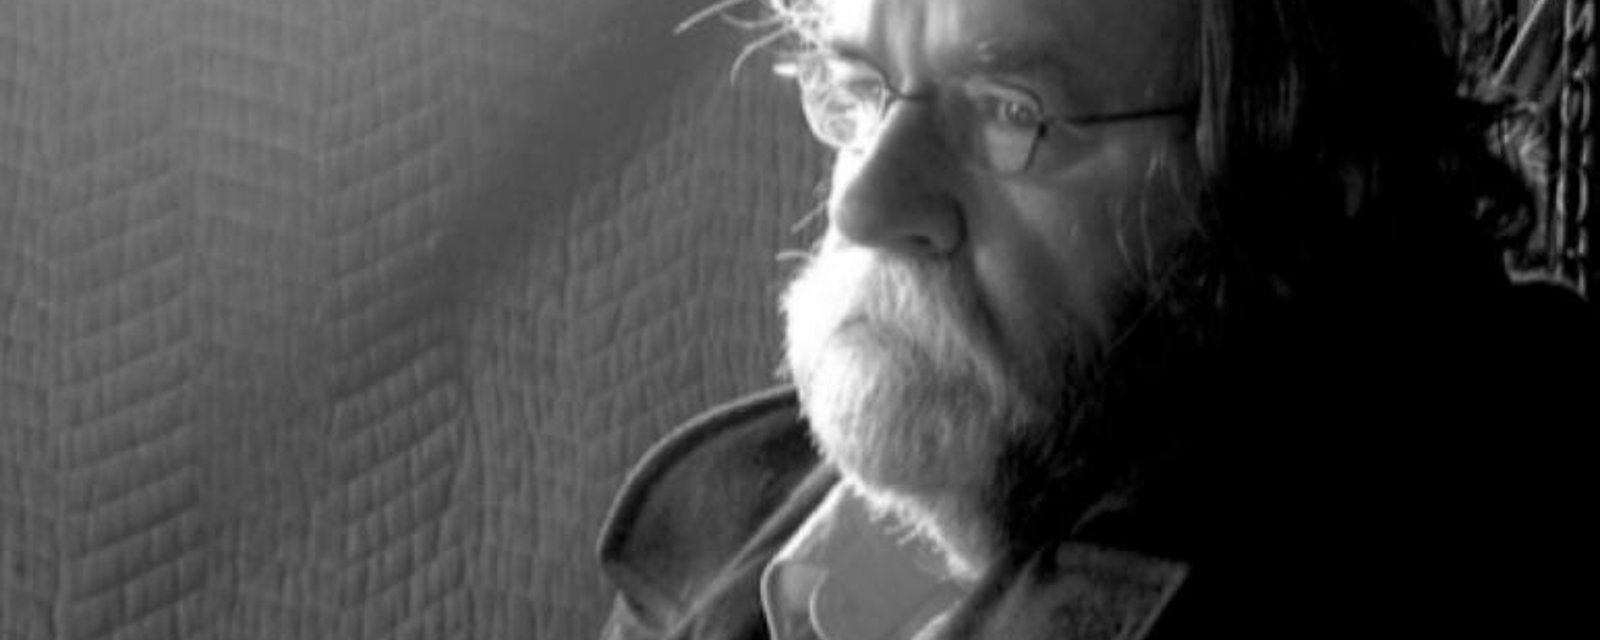 DERNIÈRE HEURE: Le grand cinéaste québécois Jean-Claude Labrecque est décédé à 80 ans